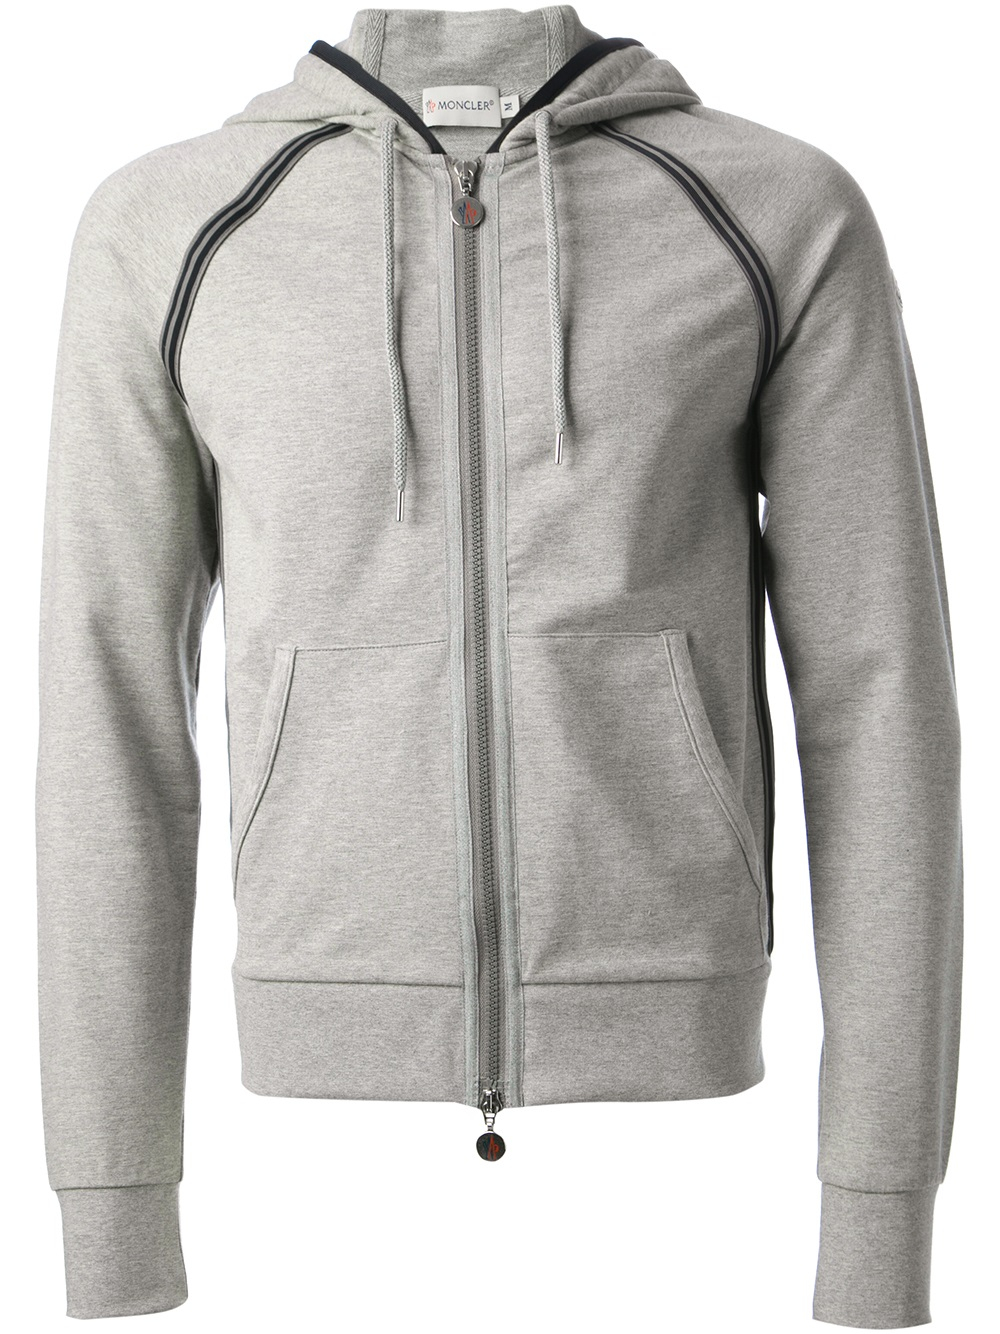 Moncler Zip Front Hoodie in Grey (Gray) for Men - Lyst